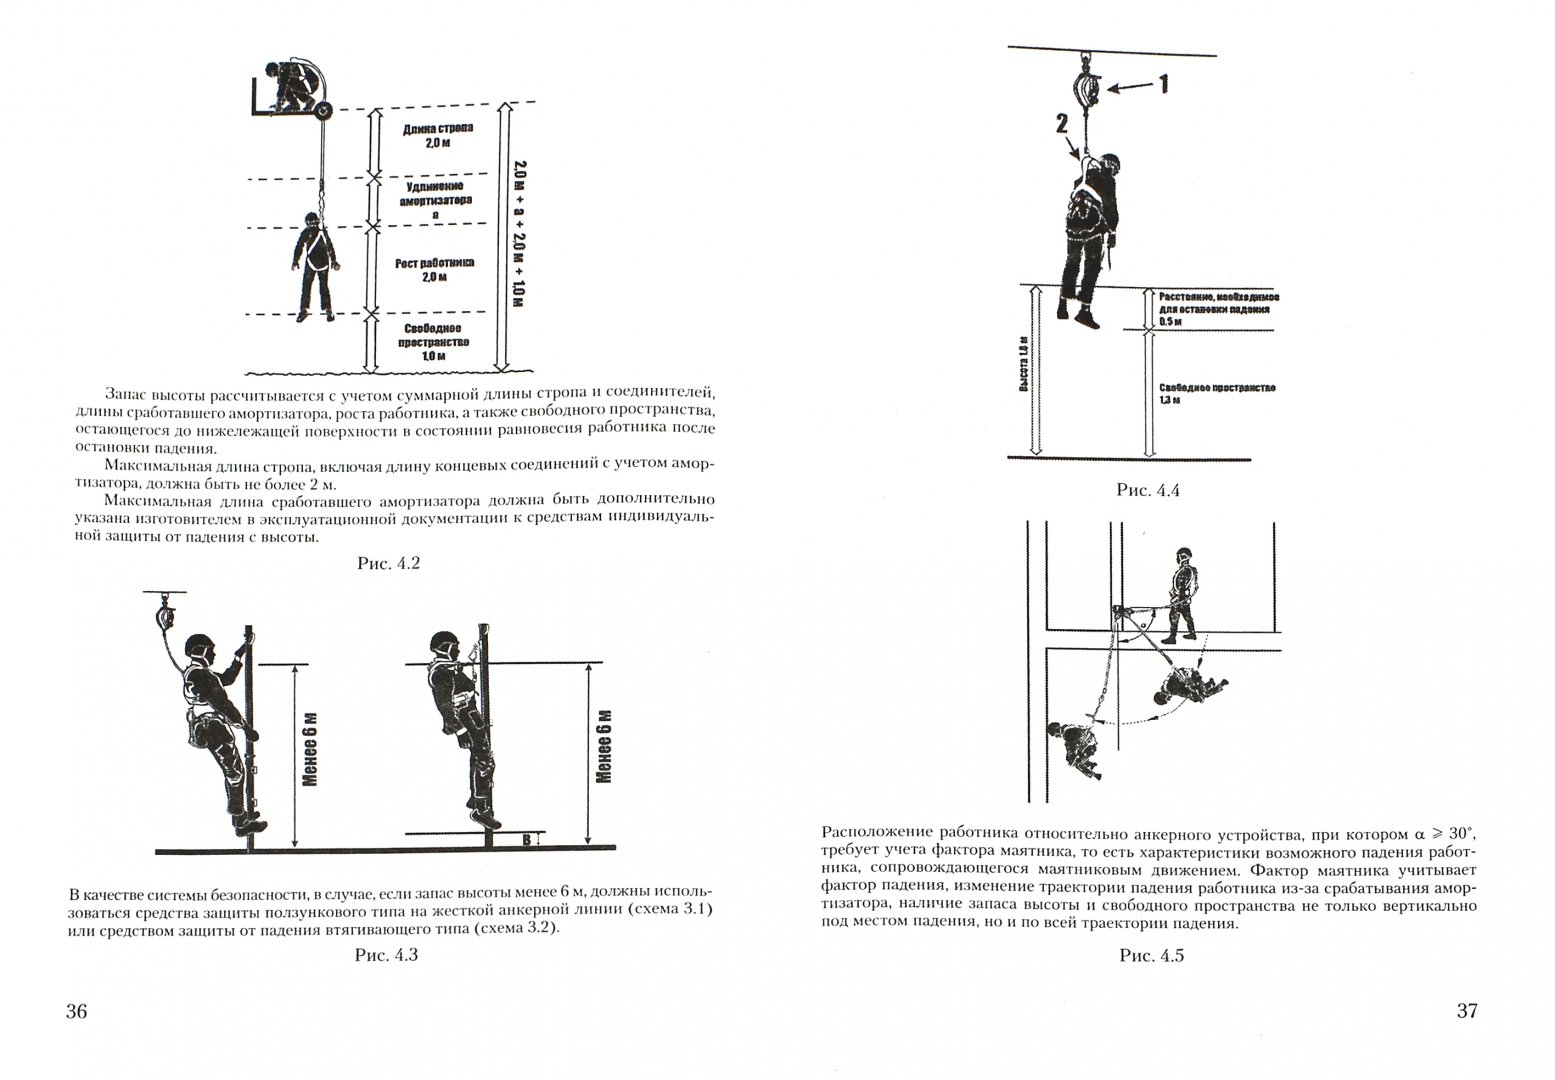 Иллюстрация 1 из 3 для Охрана труда при работах на высоте - Ю. Михайлов | Лабиринт - книги. Источник: Лабиринт